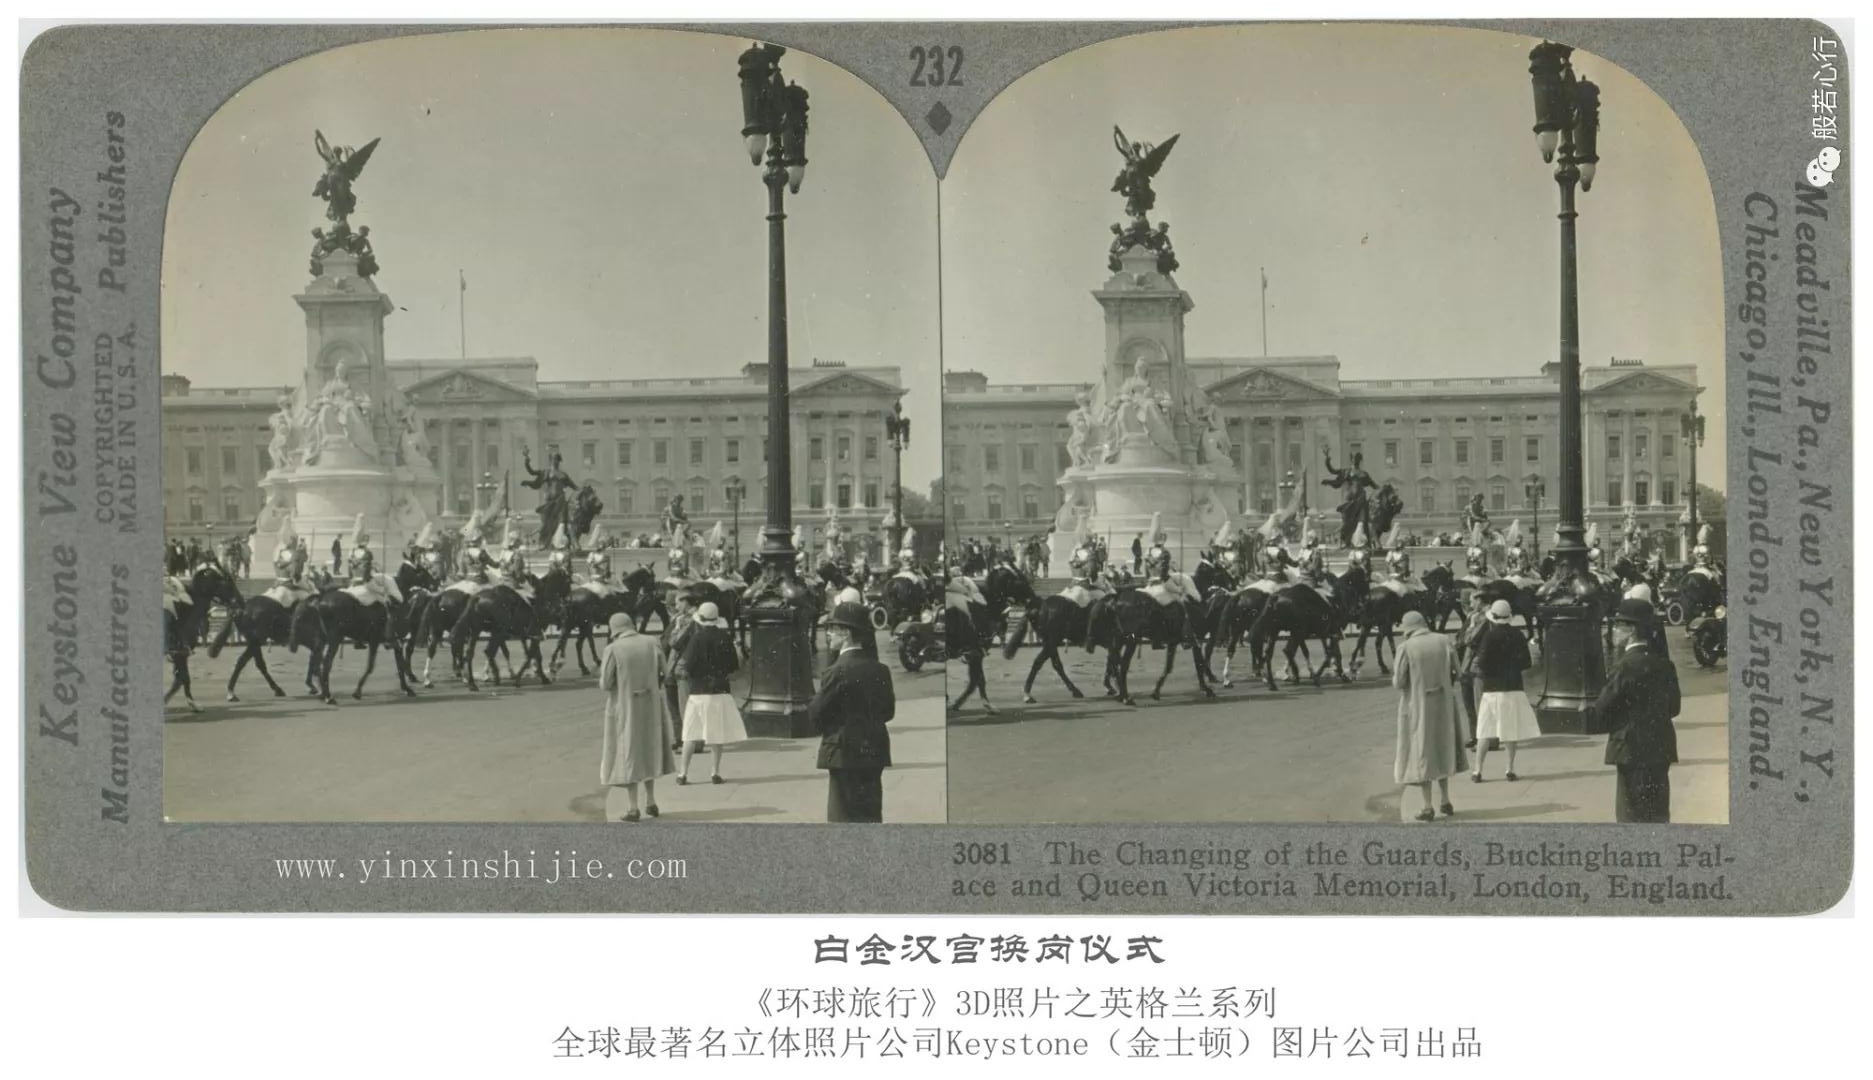 白金汉宫换岗仪式-1936年3D版《环球旅行》立体照片